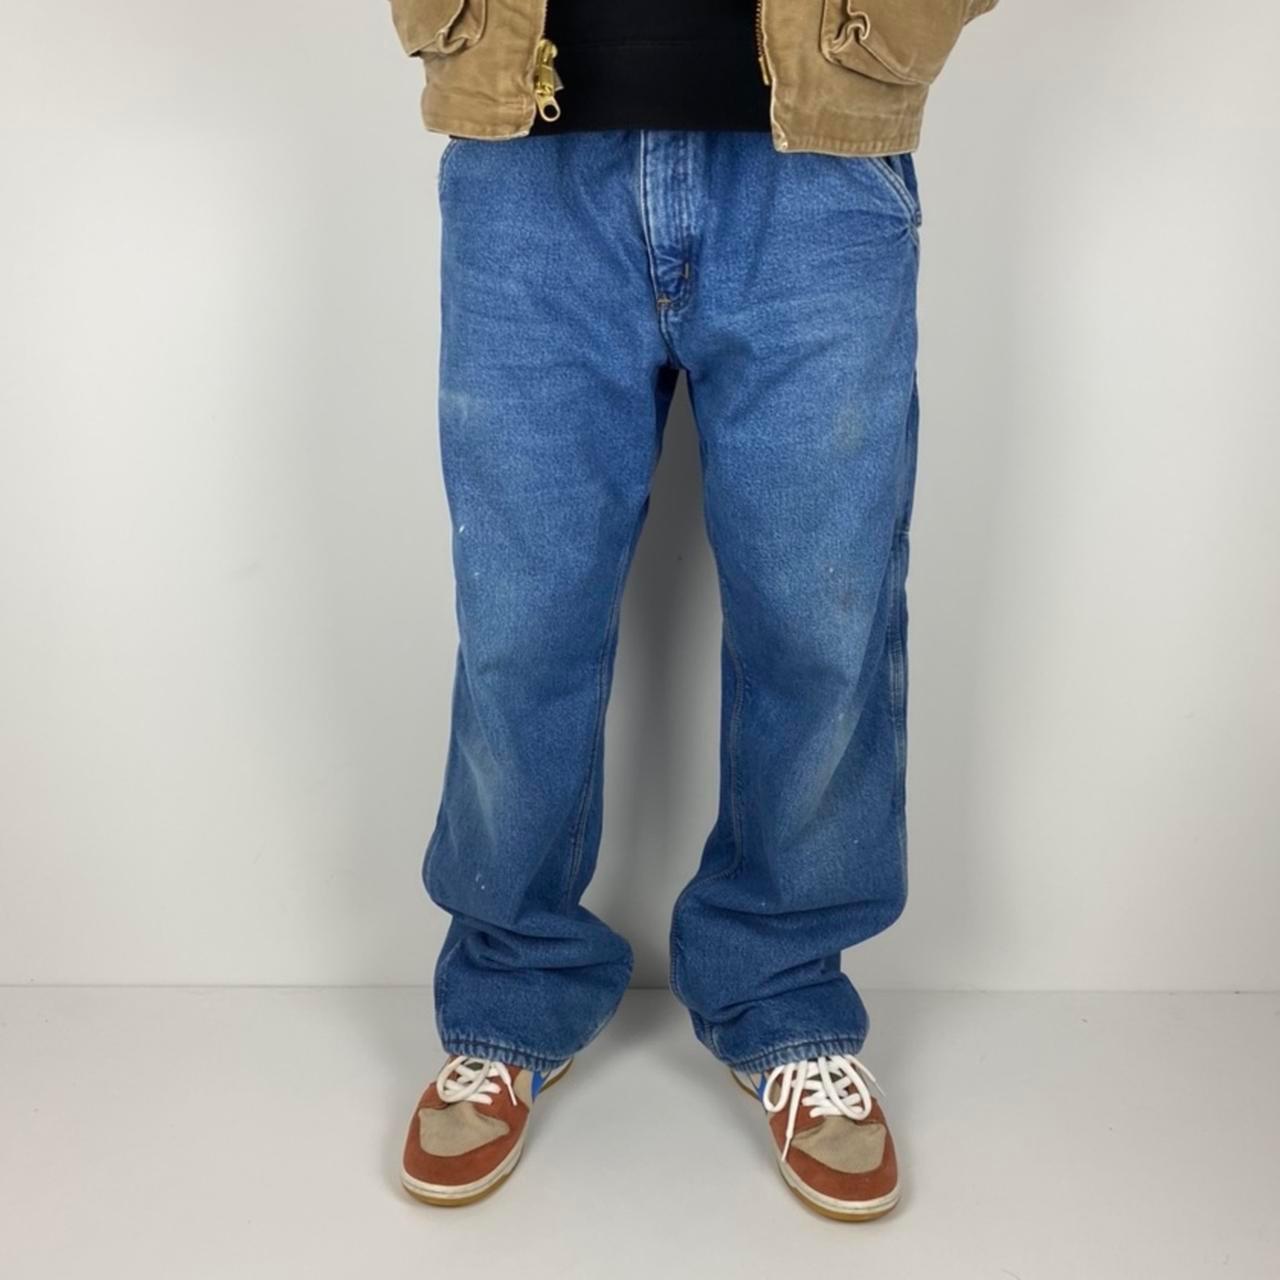 Vintage Carhartt Fleece Lined Jeans Size 36” x 34”... - Depop